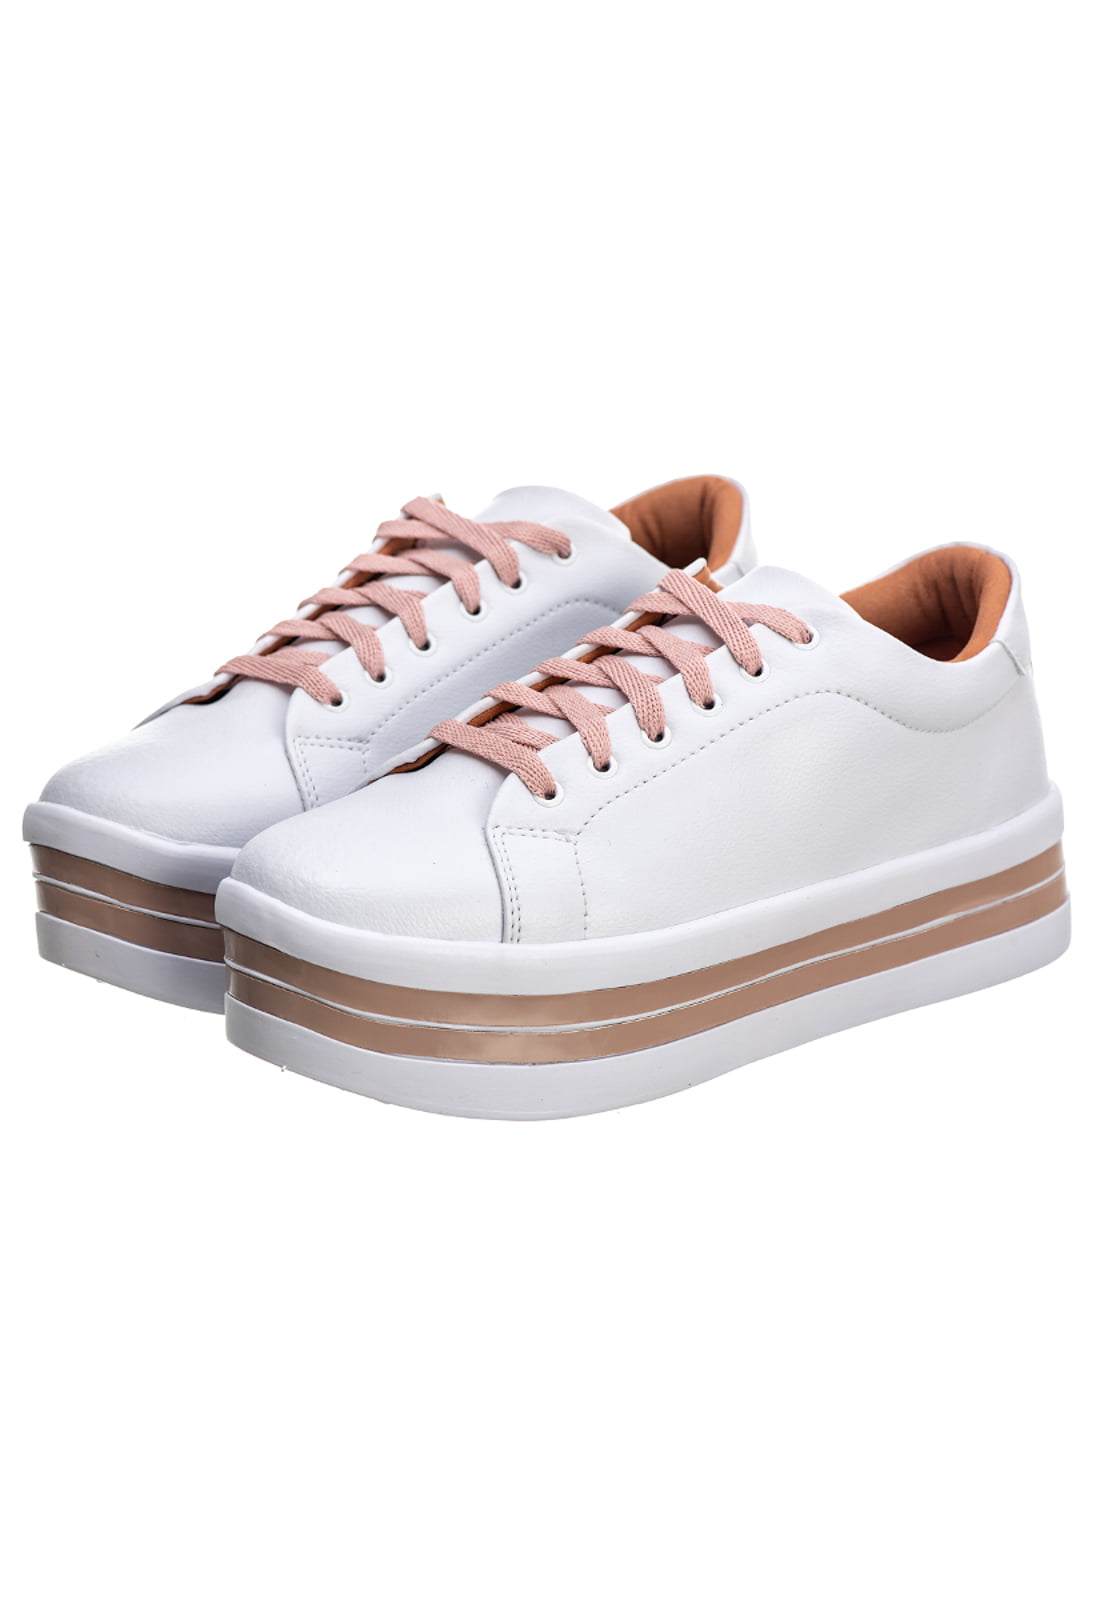 Tênis Feminino Plataforma Branco/Pérola - Estilo Shoes